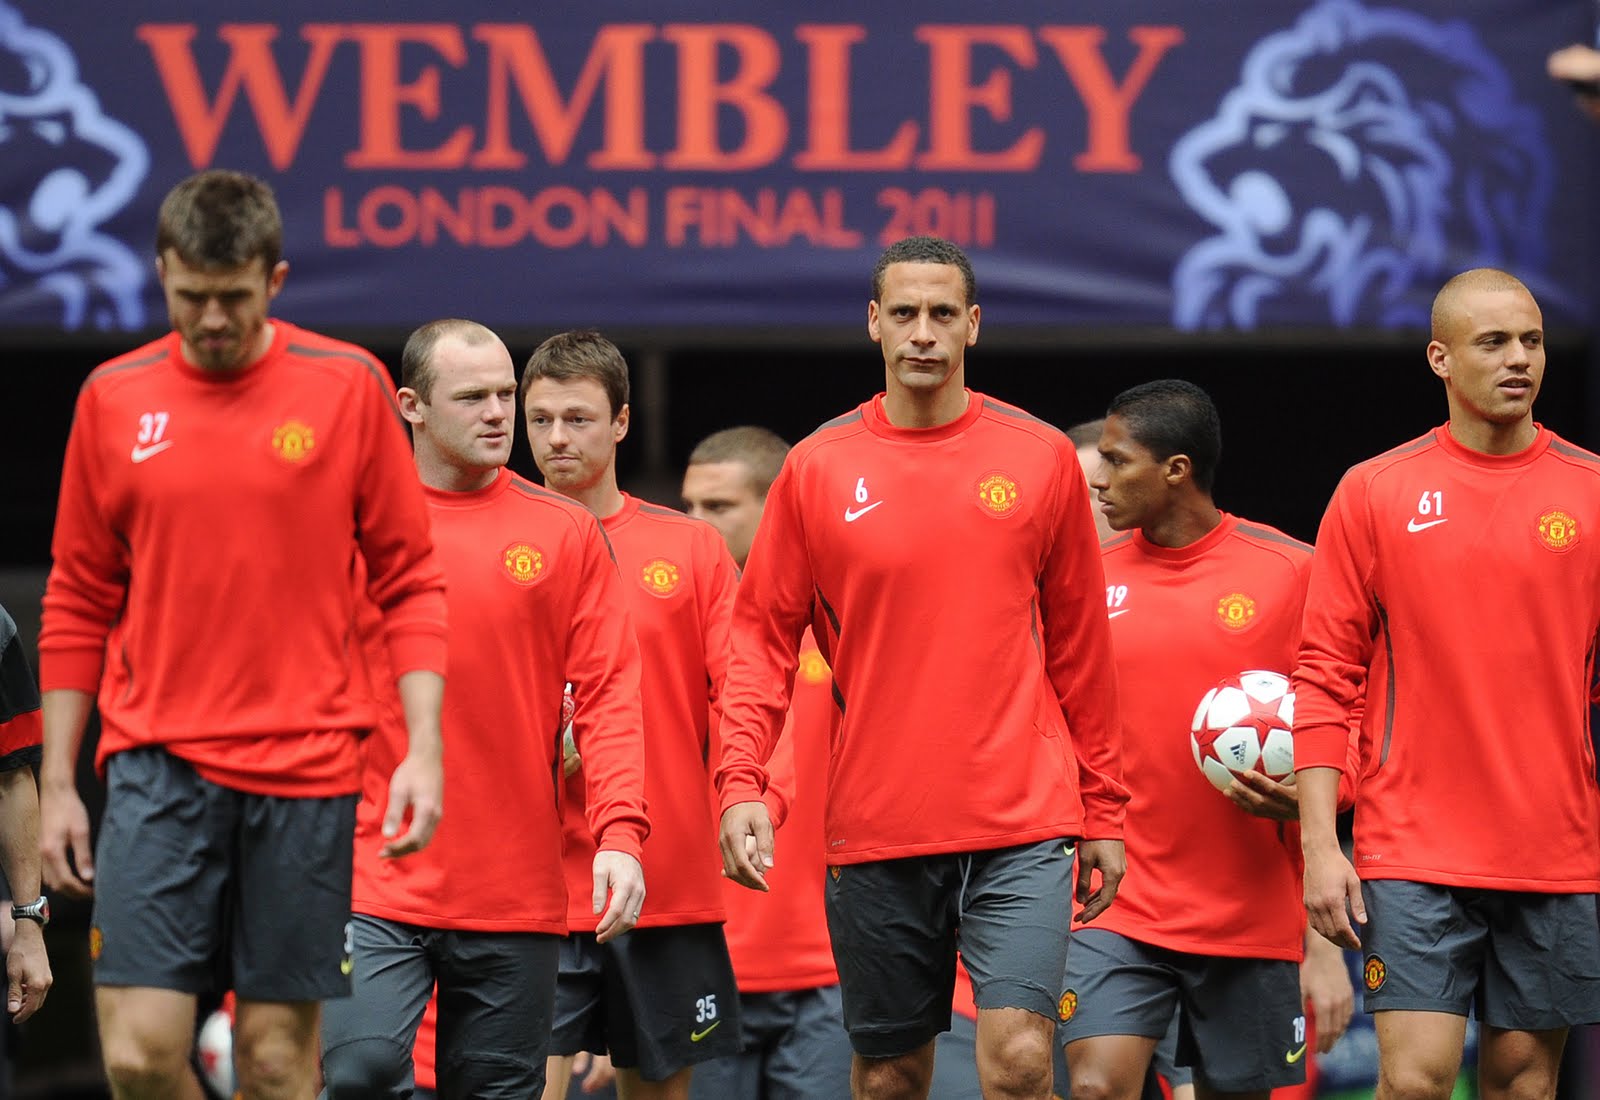 Man Utd At Wembley | Epl Football Wallpaper For Android: Man Utd At Wembley